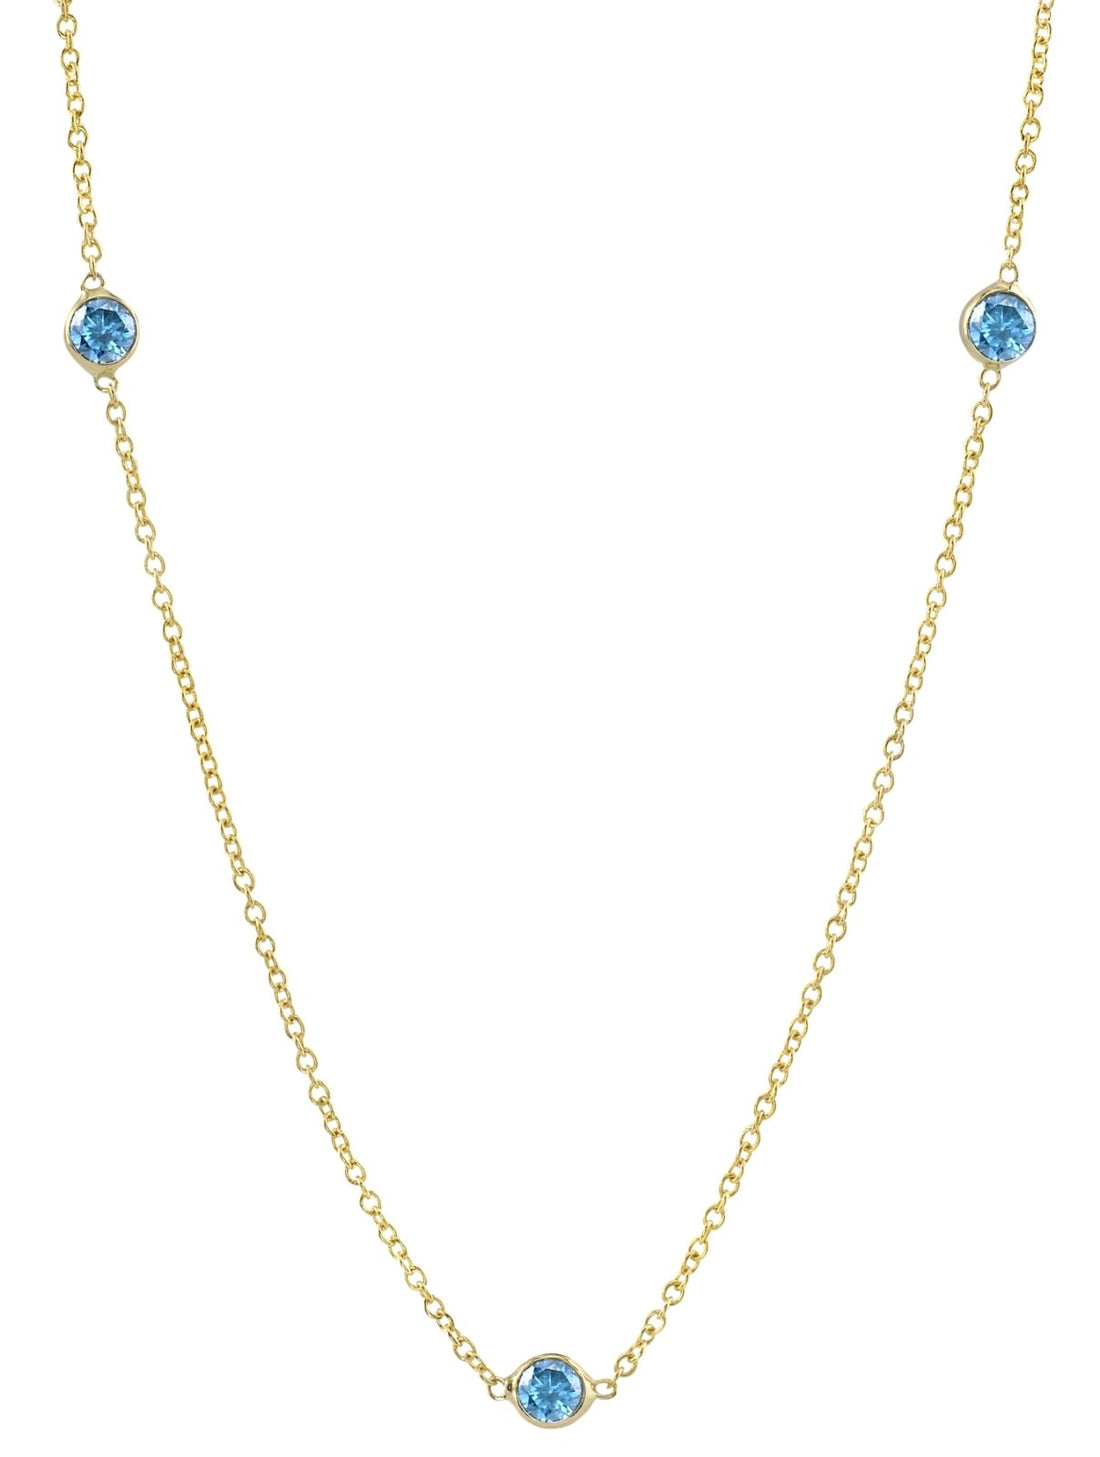 Three Blue Zircon - Ele Keats Jewelry